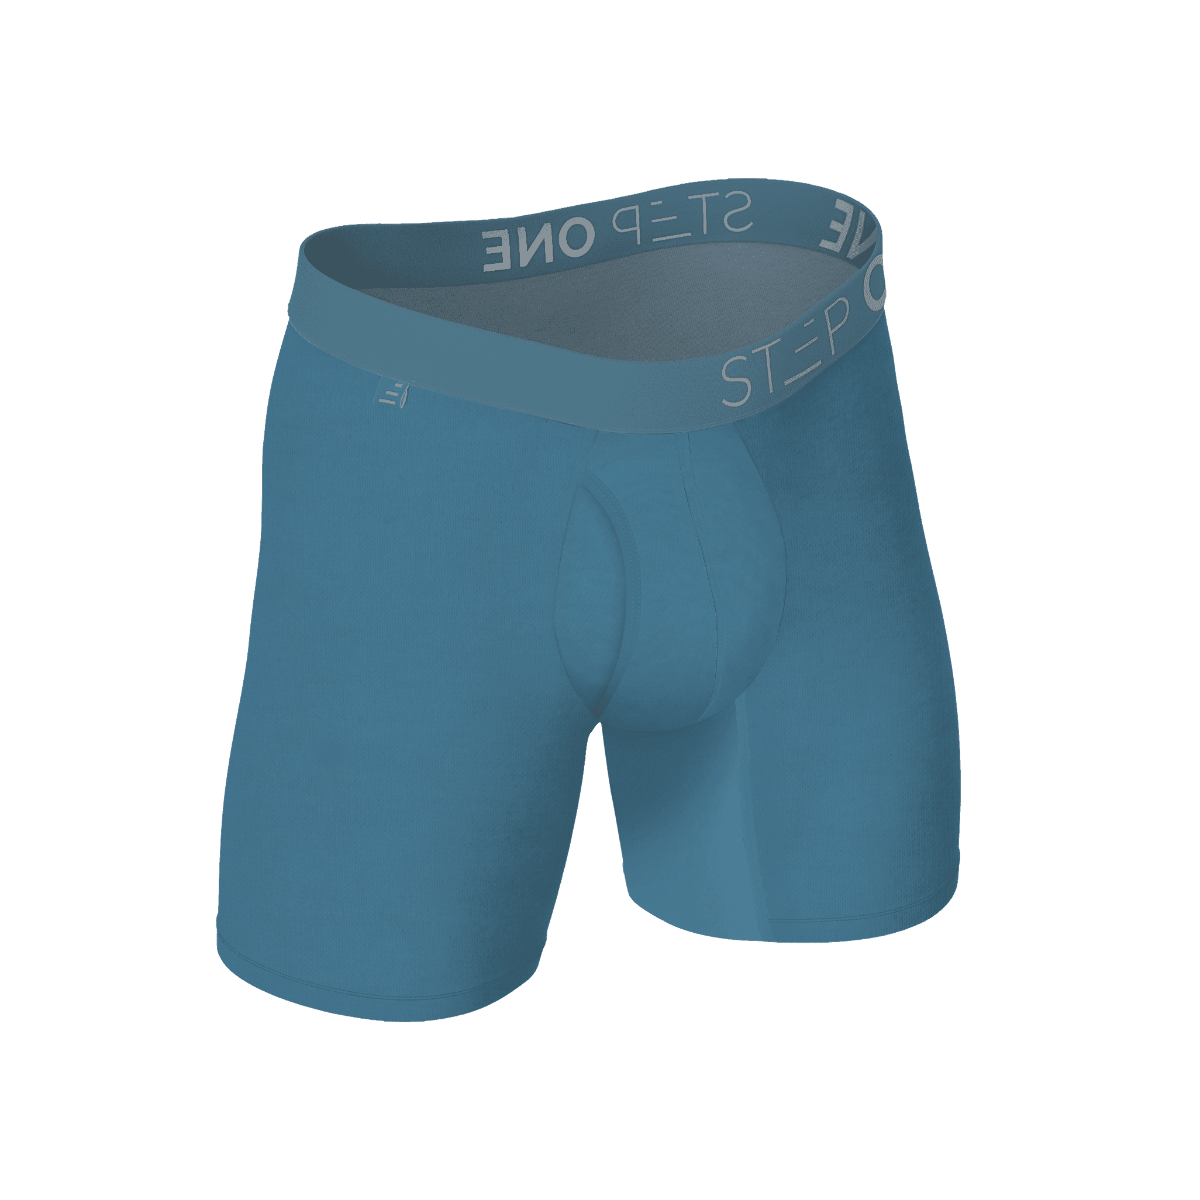 Boxer Brief Fly - Blowfish  Step One Men's Underwear UK